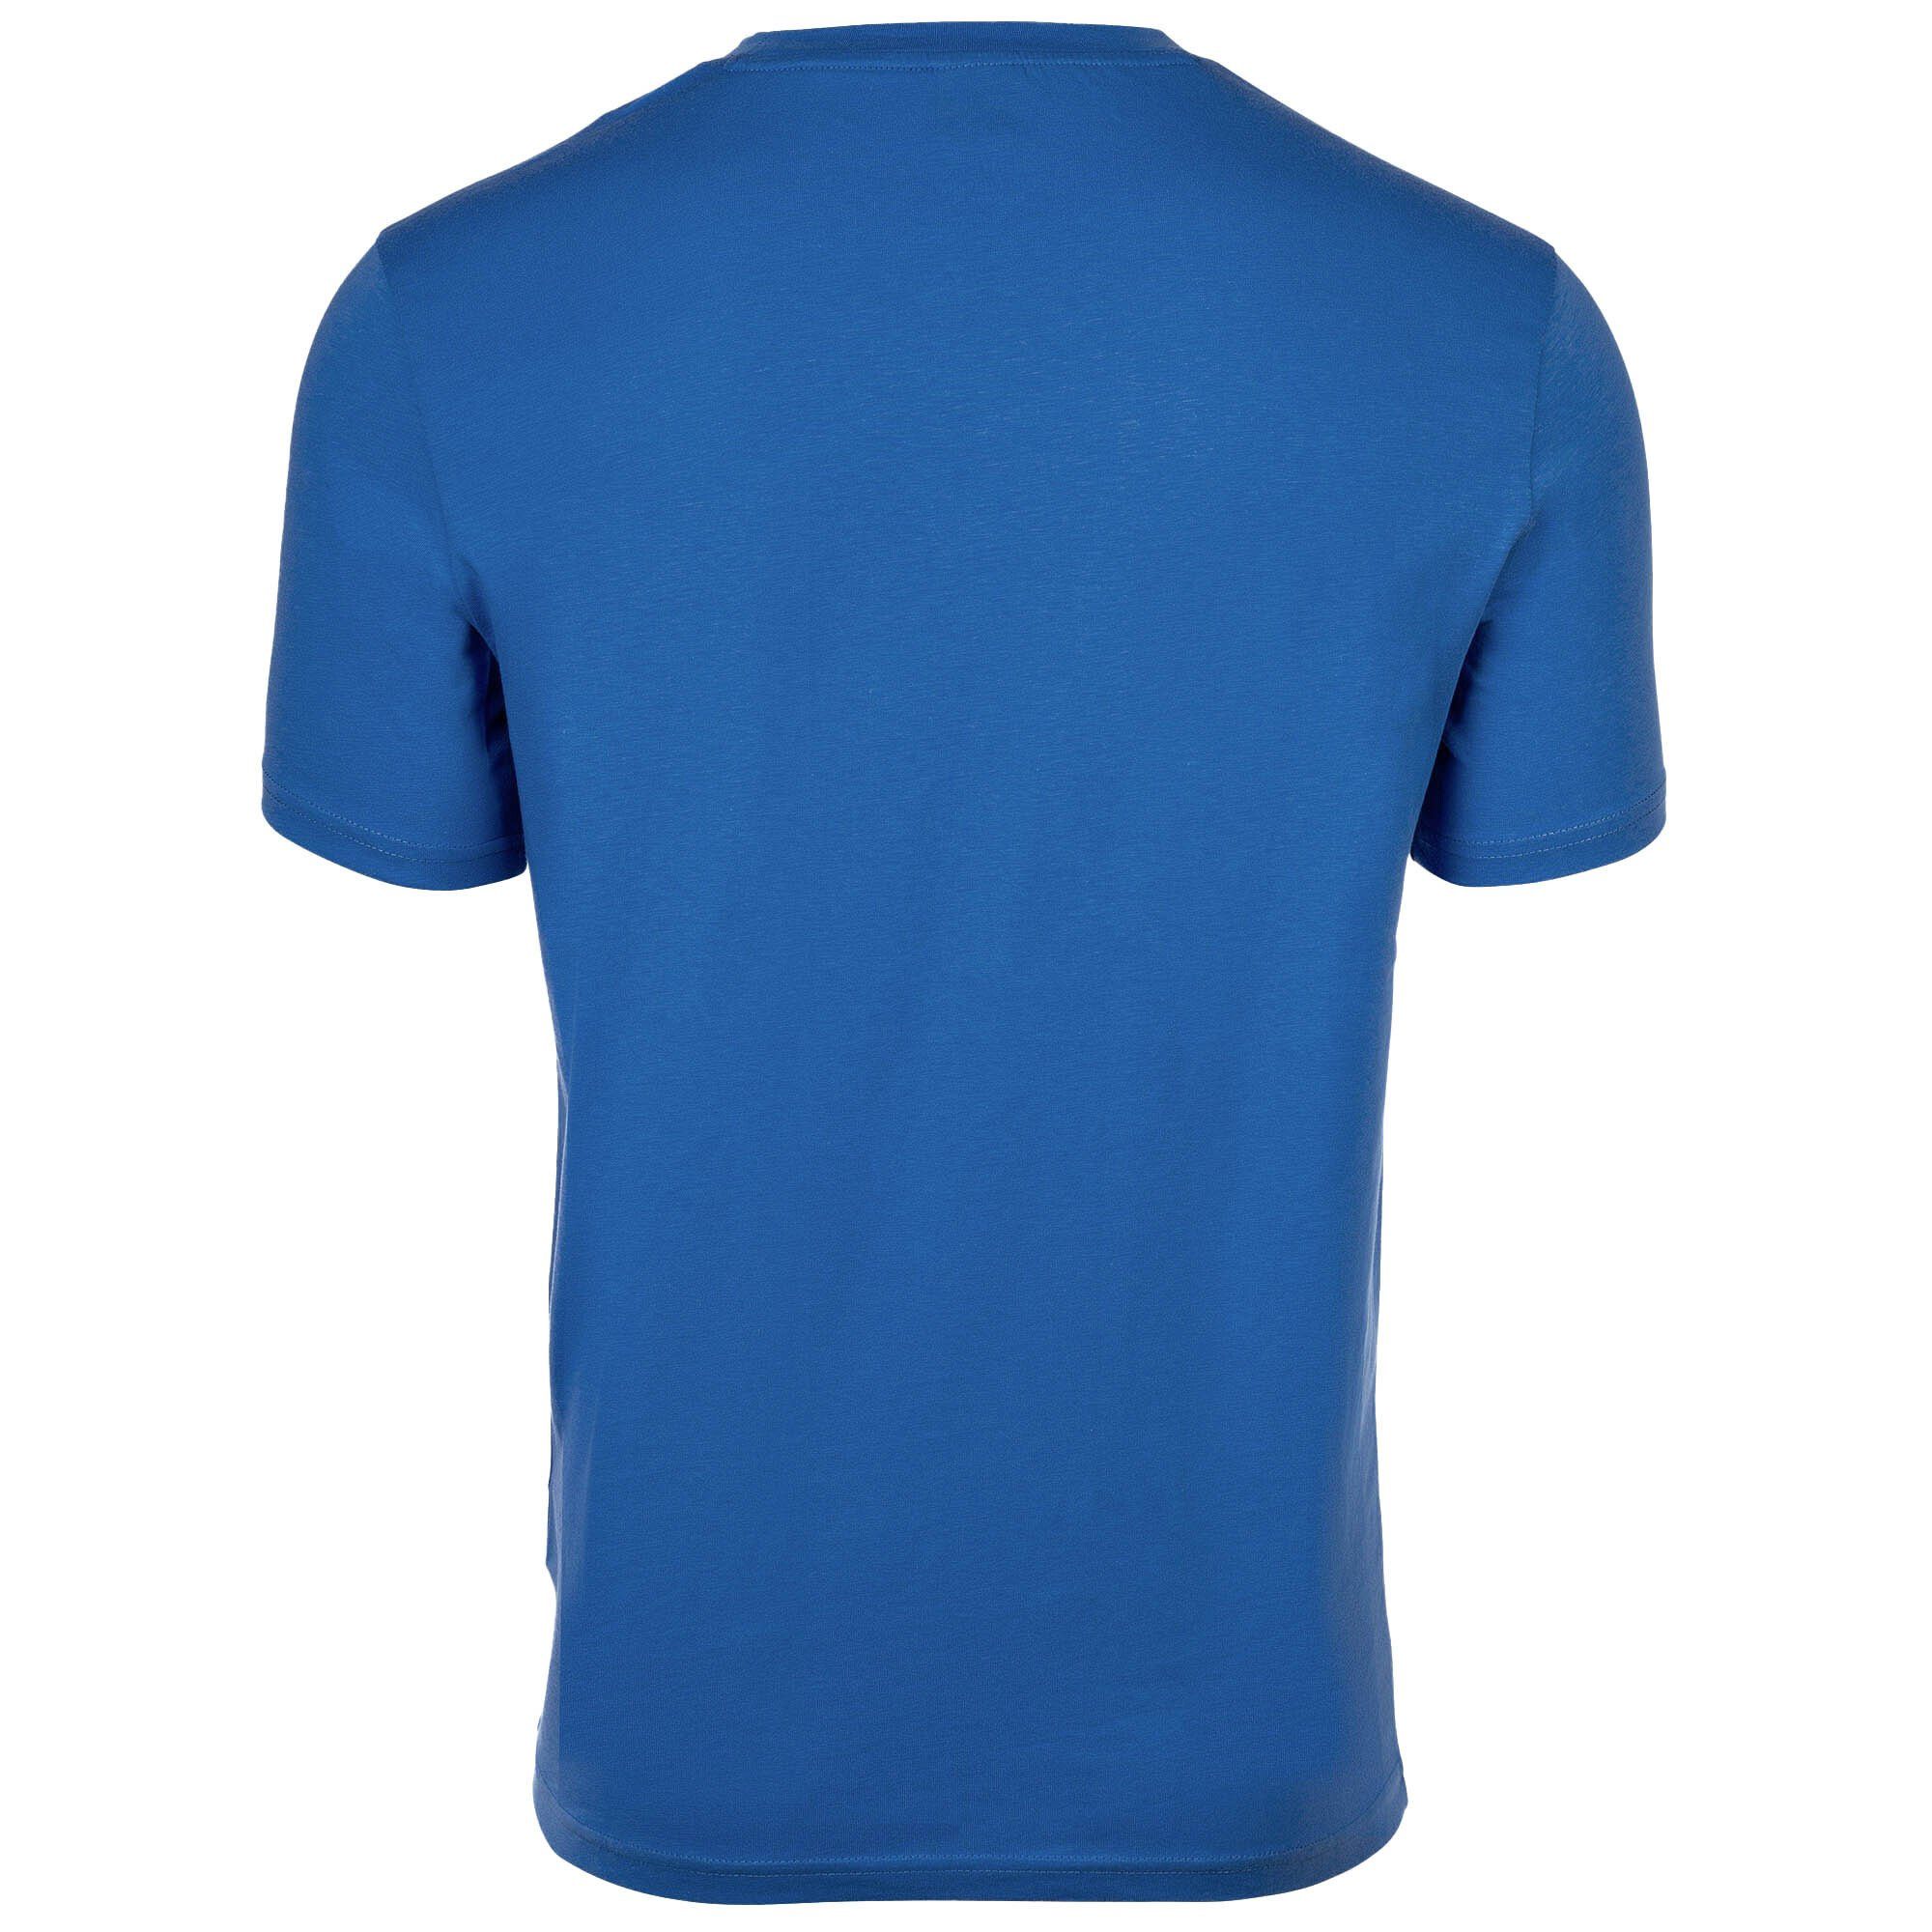 BOSS T-Shirt Herren T-Shirt RN, Kurzarm Mittelblau T-Shirt Rundhals, 